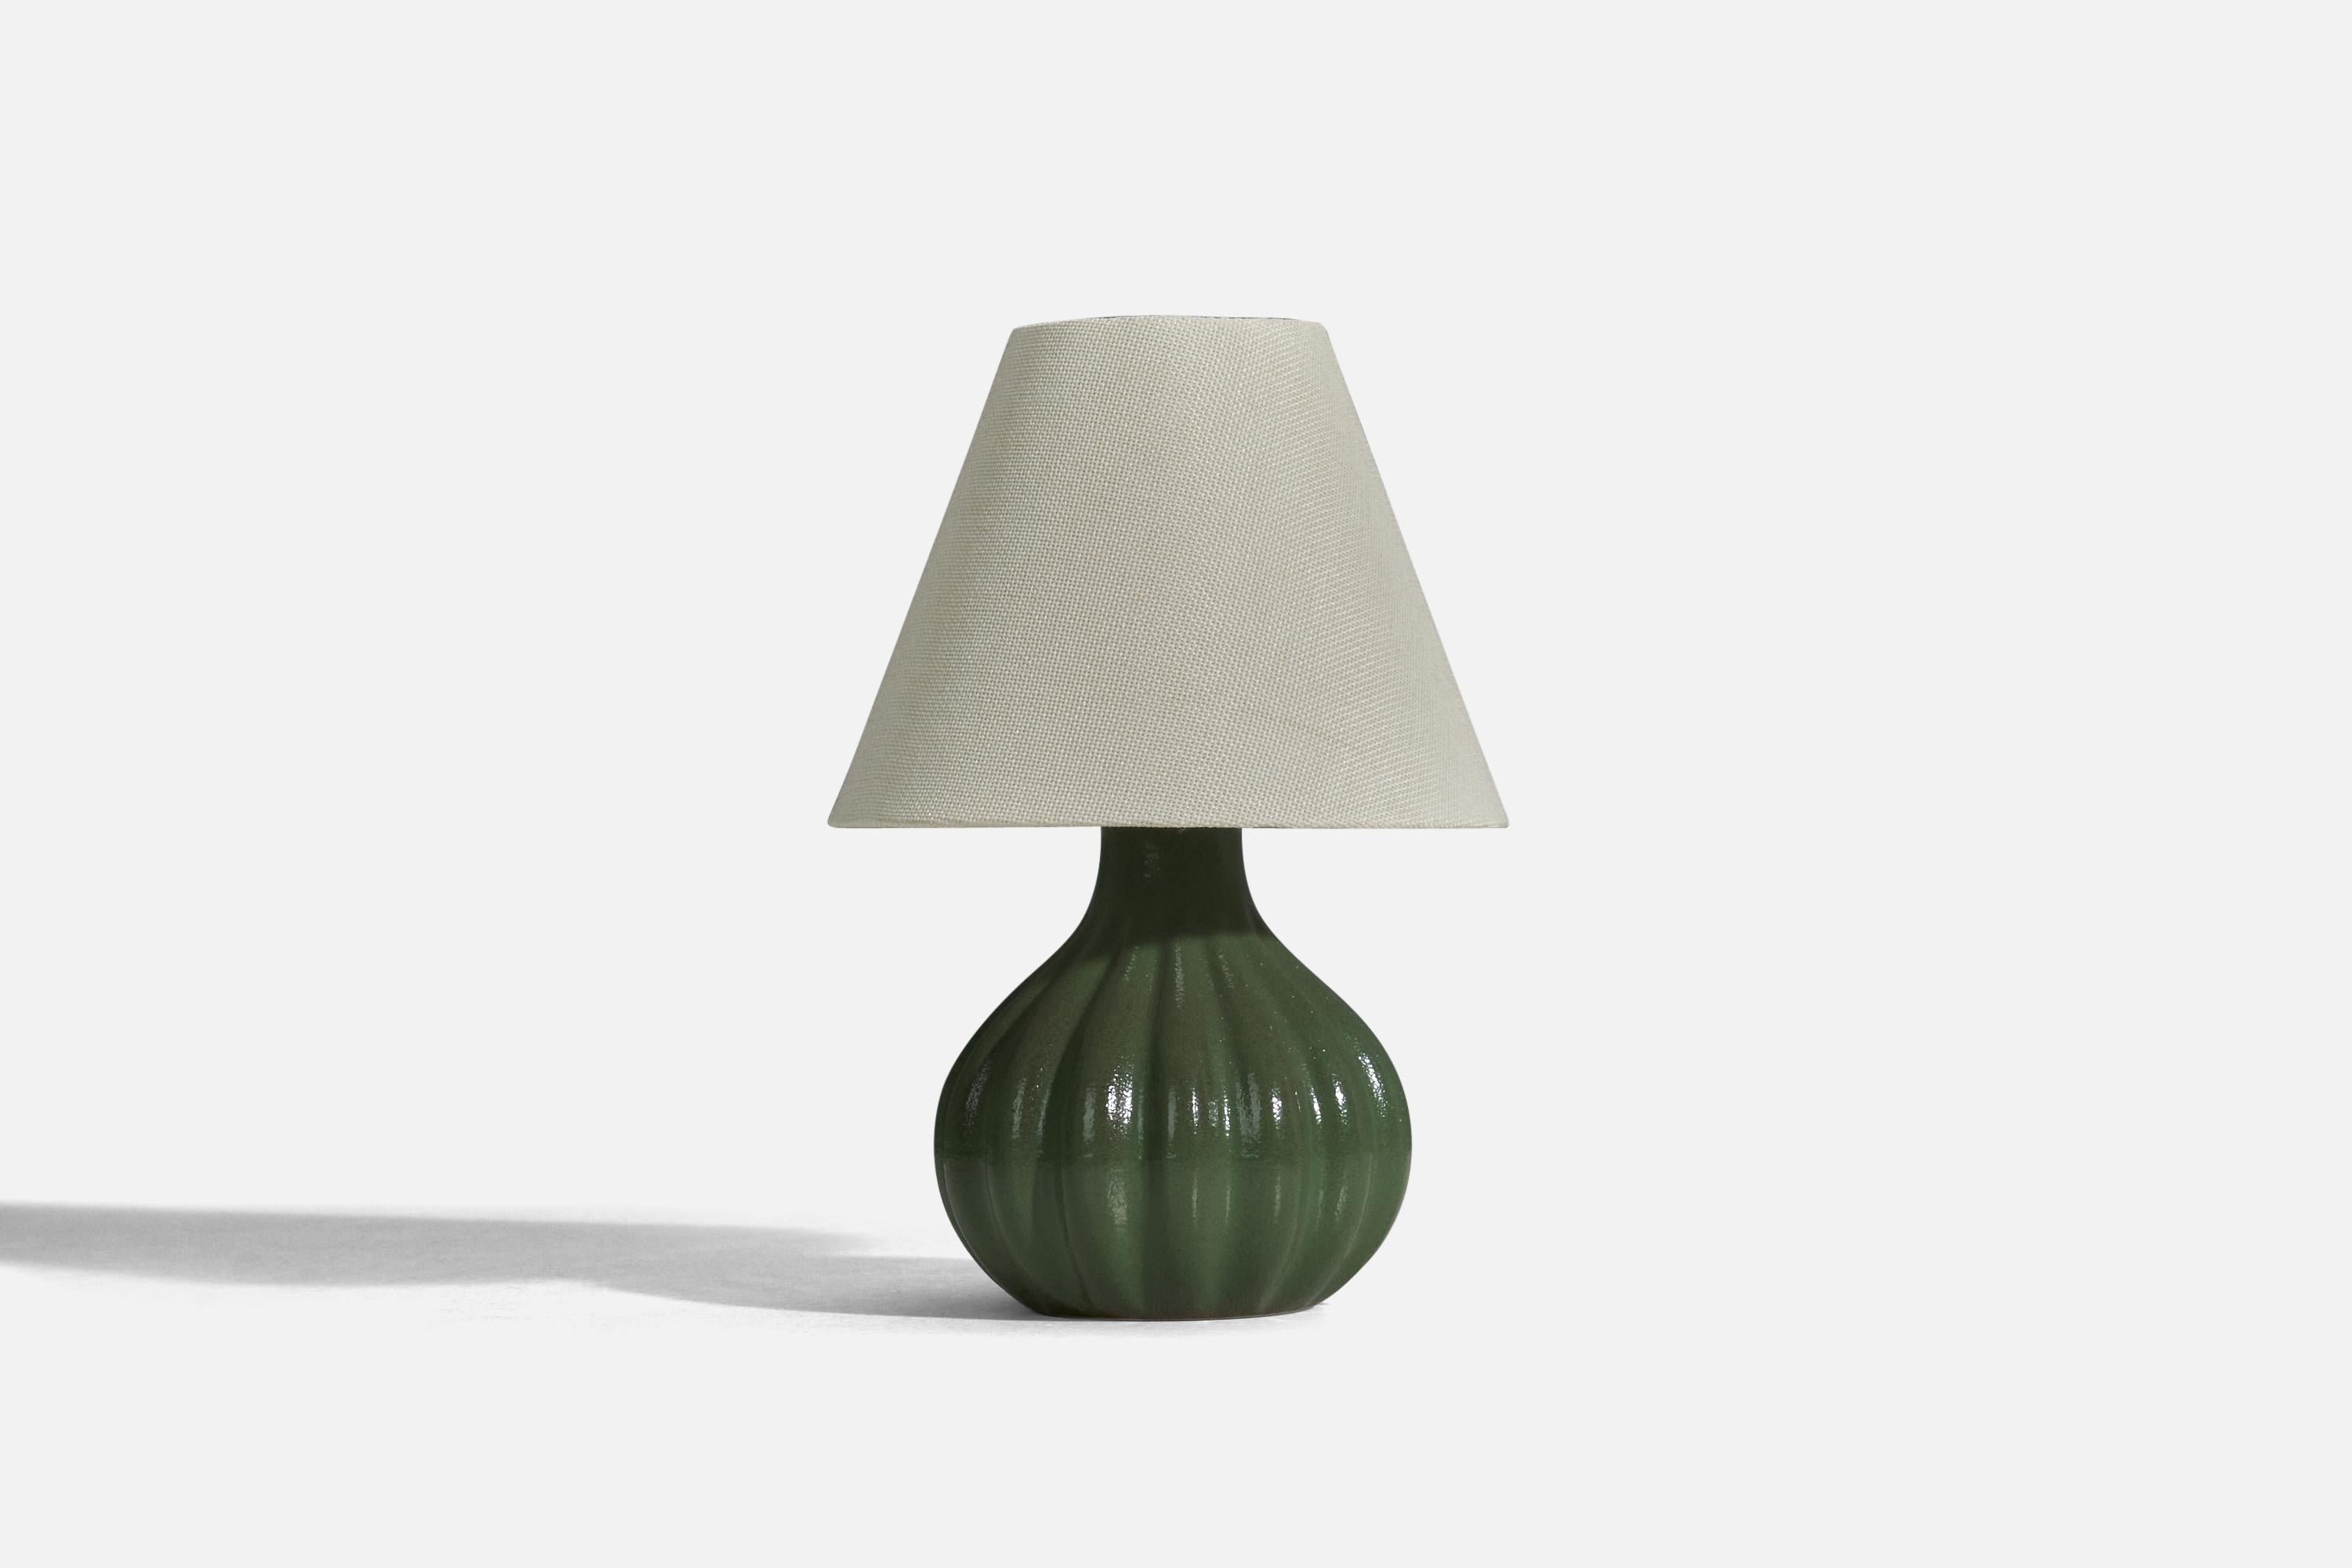 Lampe de table en grès émaillé vert, conçue et produite par Ego Stengods, Suède, années 1960.

Vendu sans abat-jour
Dimensions de la lampe (pouces) : 8,25 x 5,56 x 5,56 (hauteur x largeur x profondeur)
Dimensions de l'abat-jour (pouces) : 3.75 x